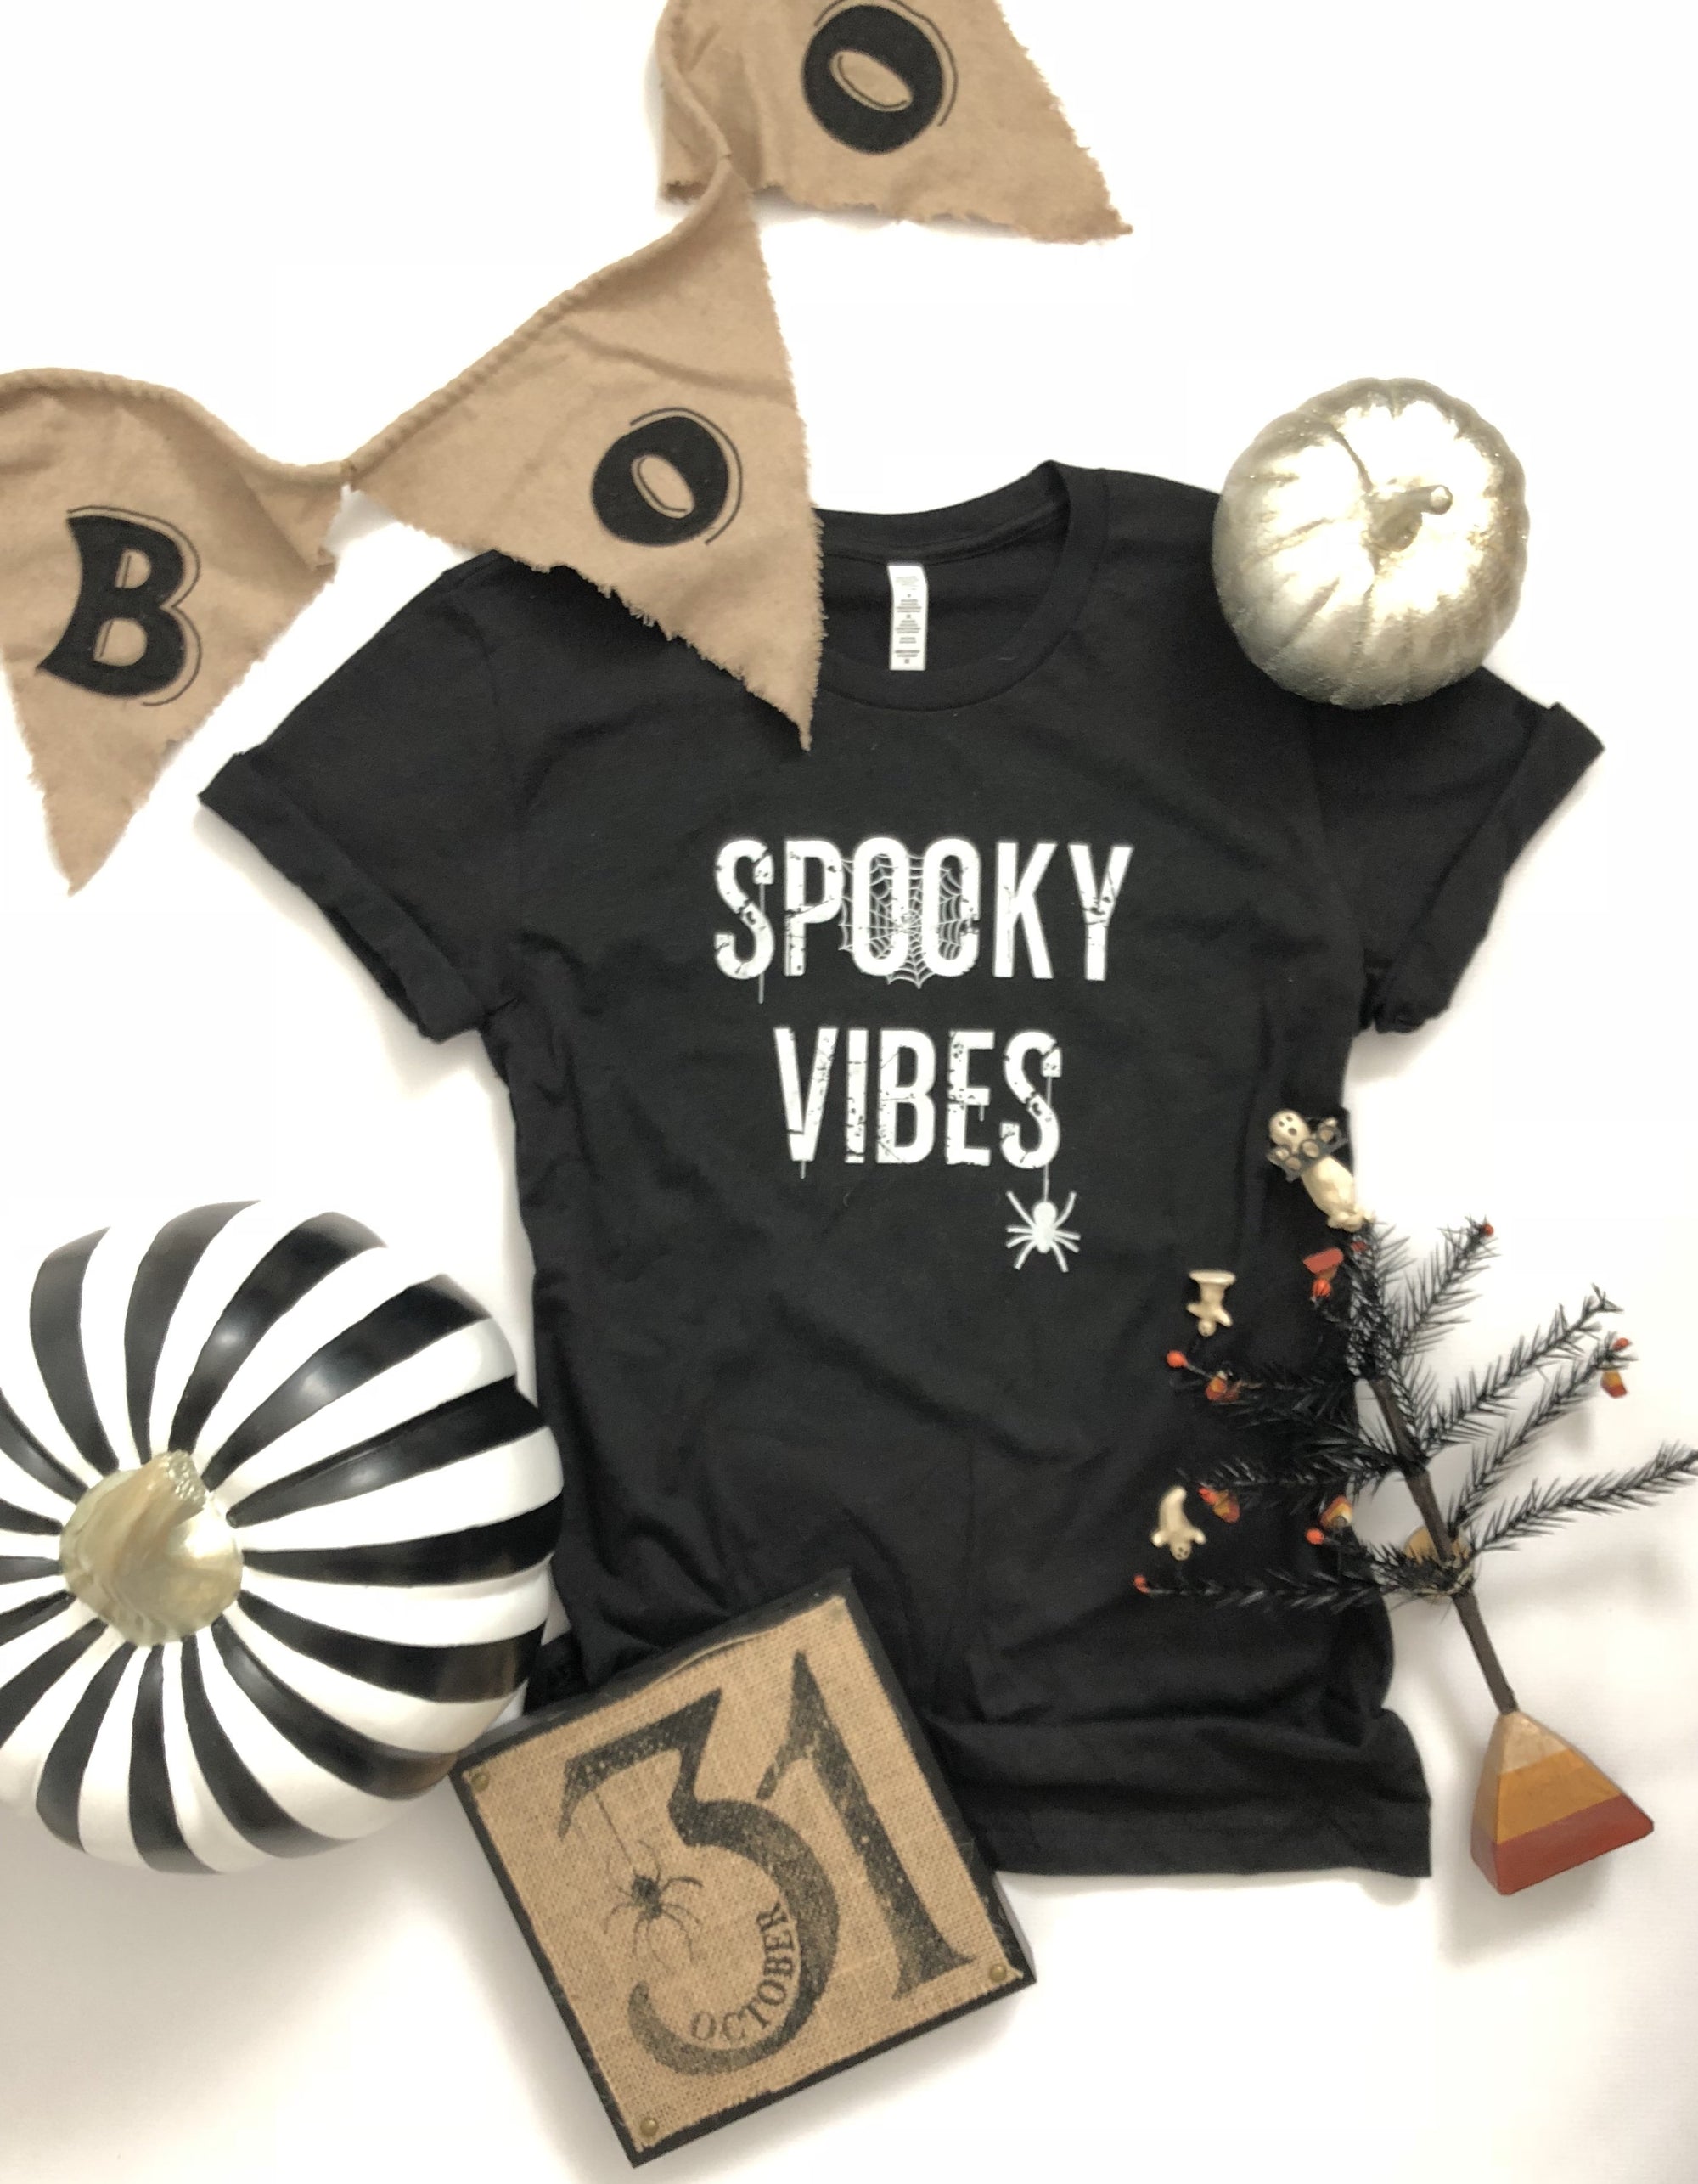 Spooky vibes kids tee Kids short sleeve halloween tee Bella canvas 3001y black 